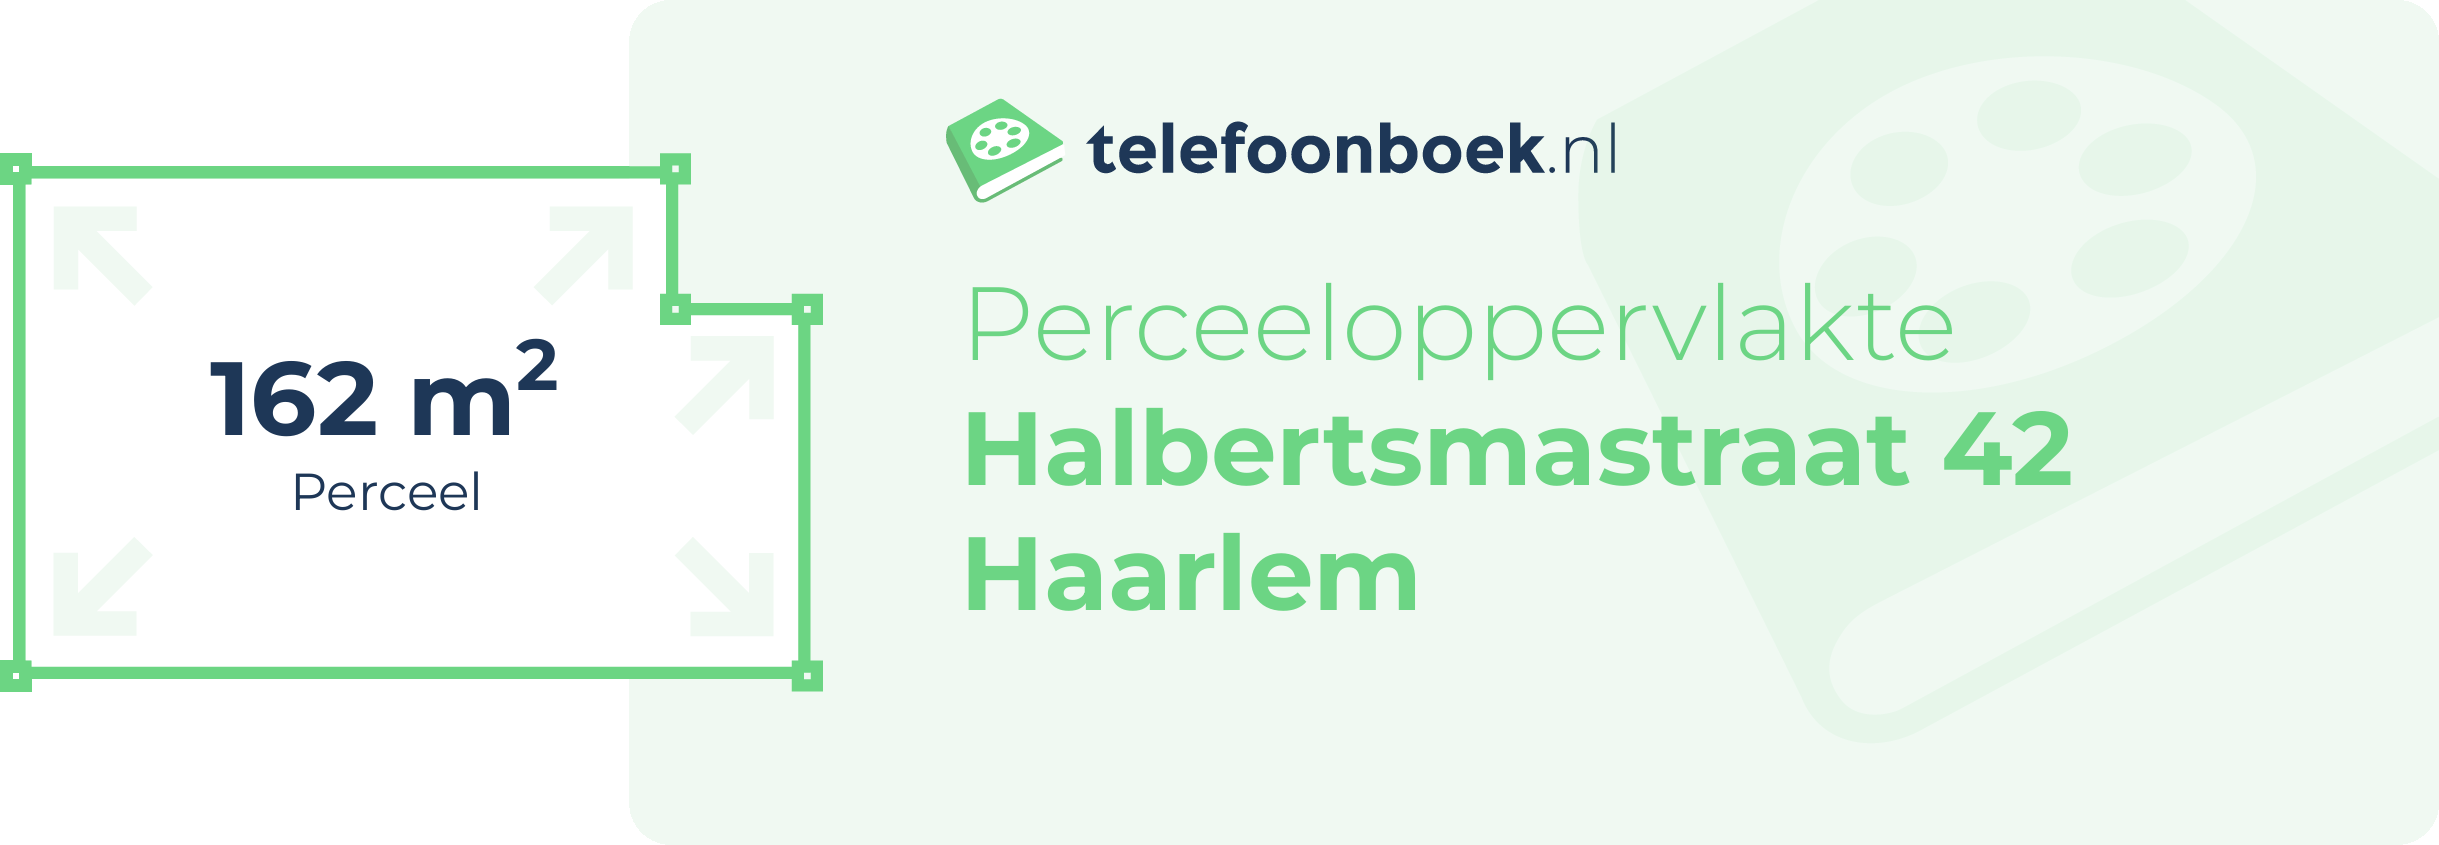 Perceeloppervlakte Halbertsmastraat 42 Haarlem